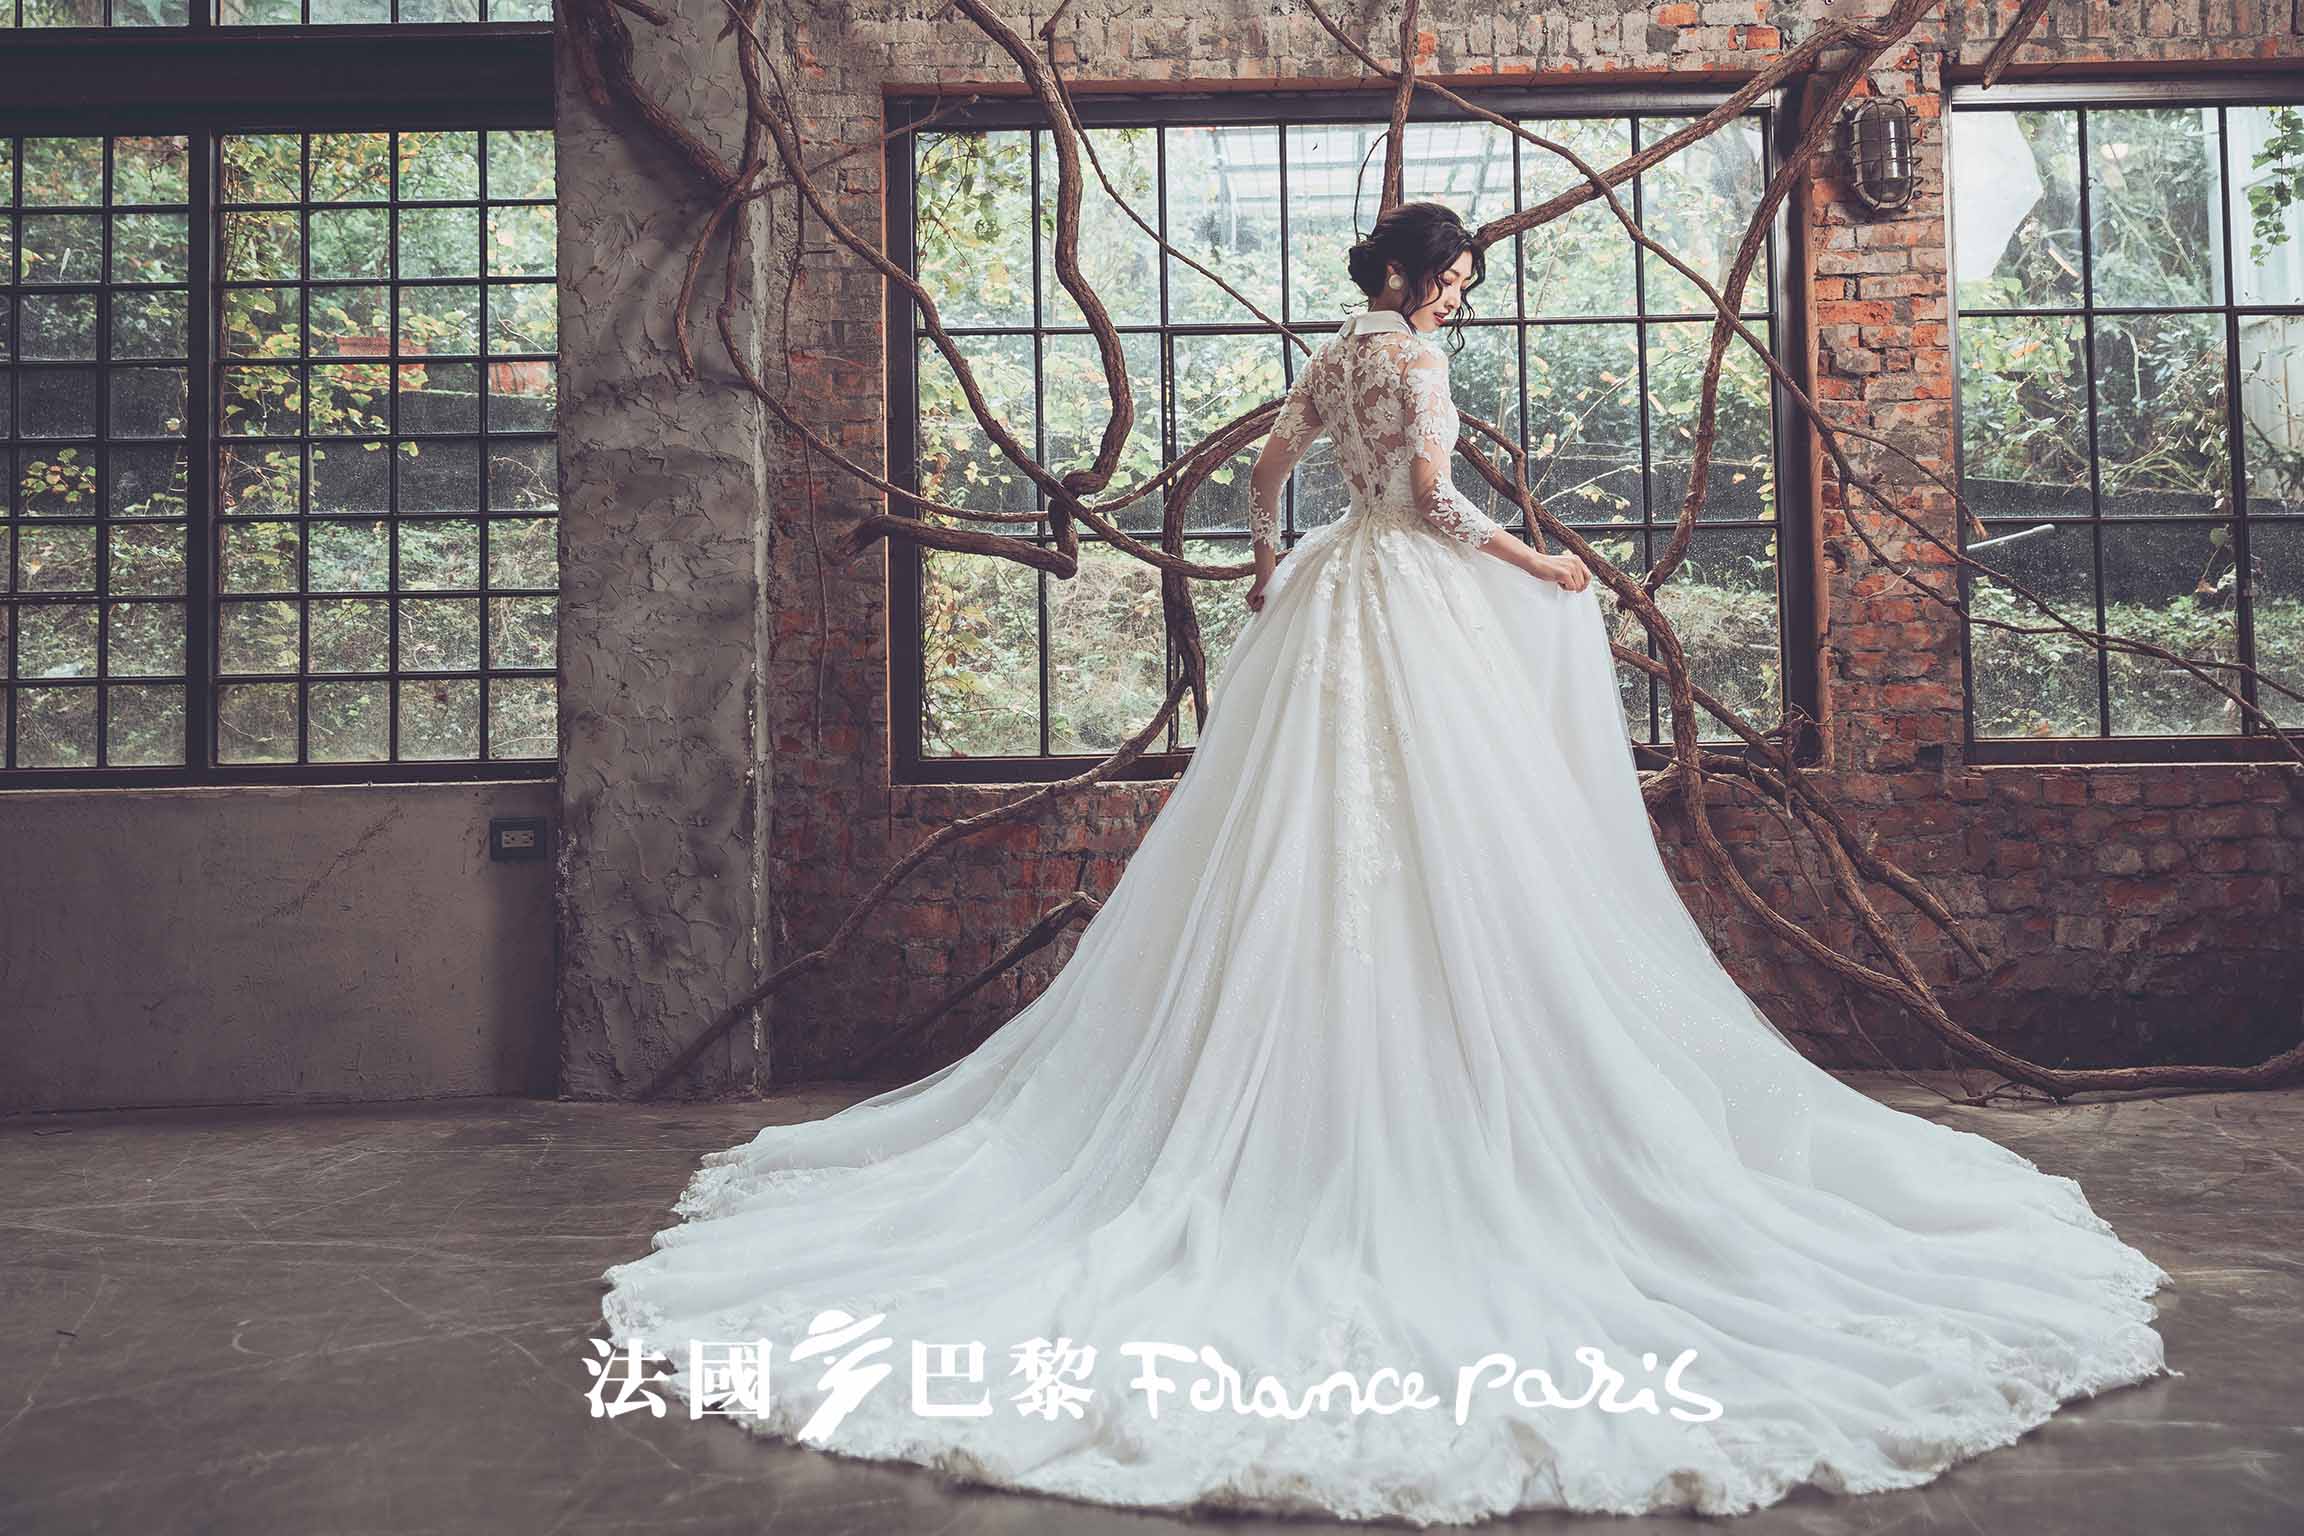 台北法國巴黎 婚紗風格照 7